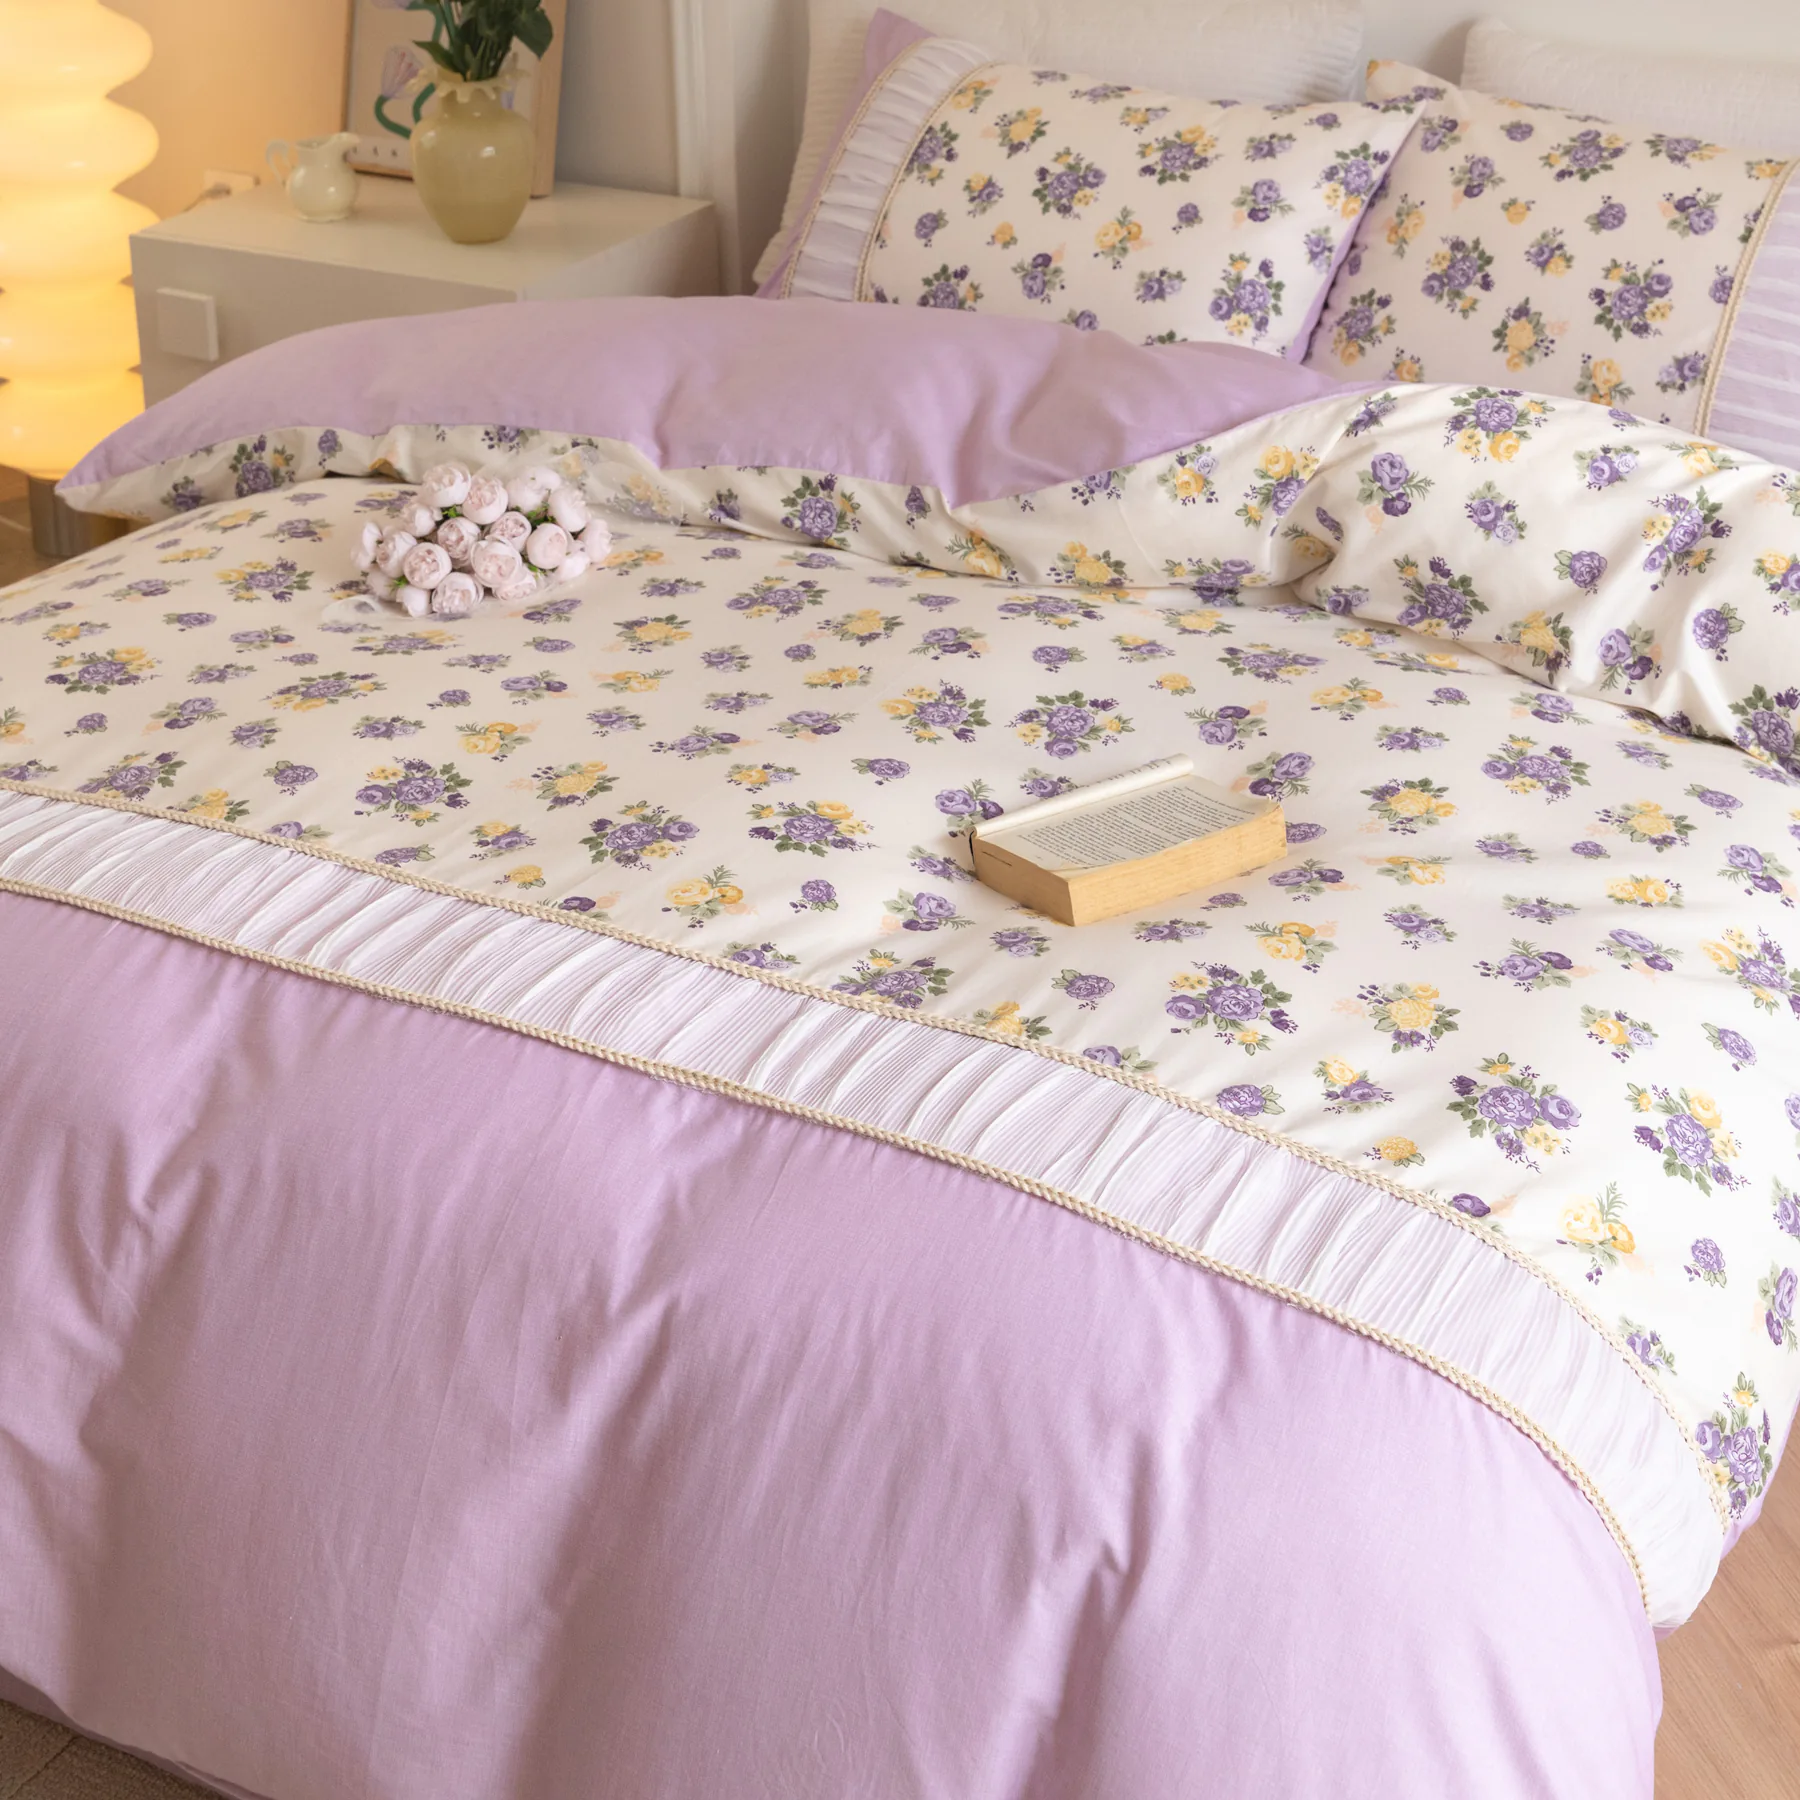 Retro Princess Style 100% Cotton Floral Duvet Cover Bedding Set01